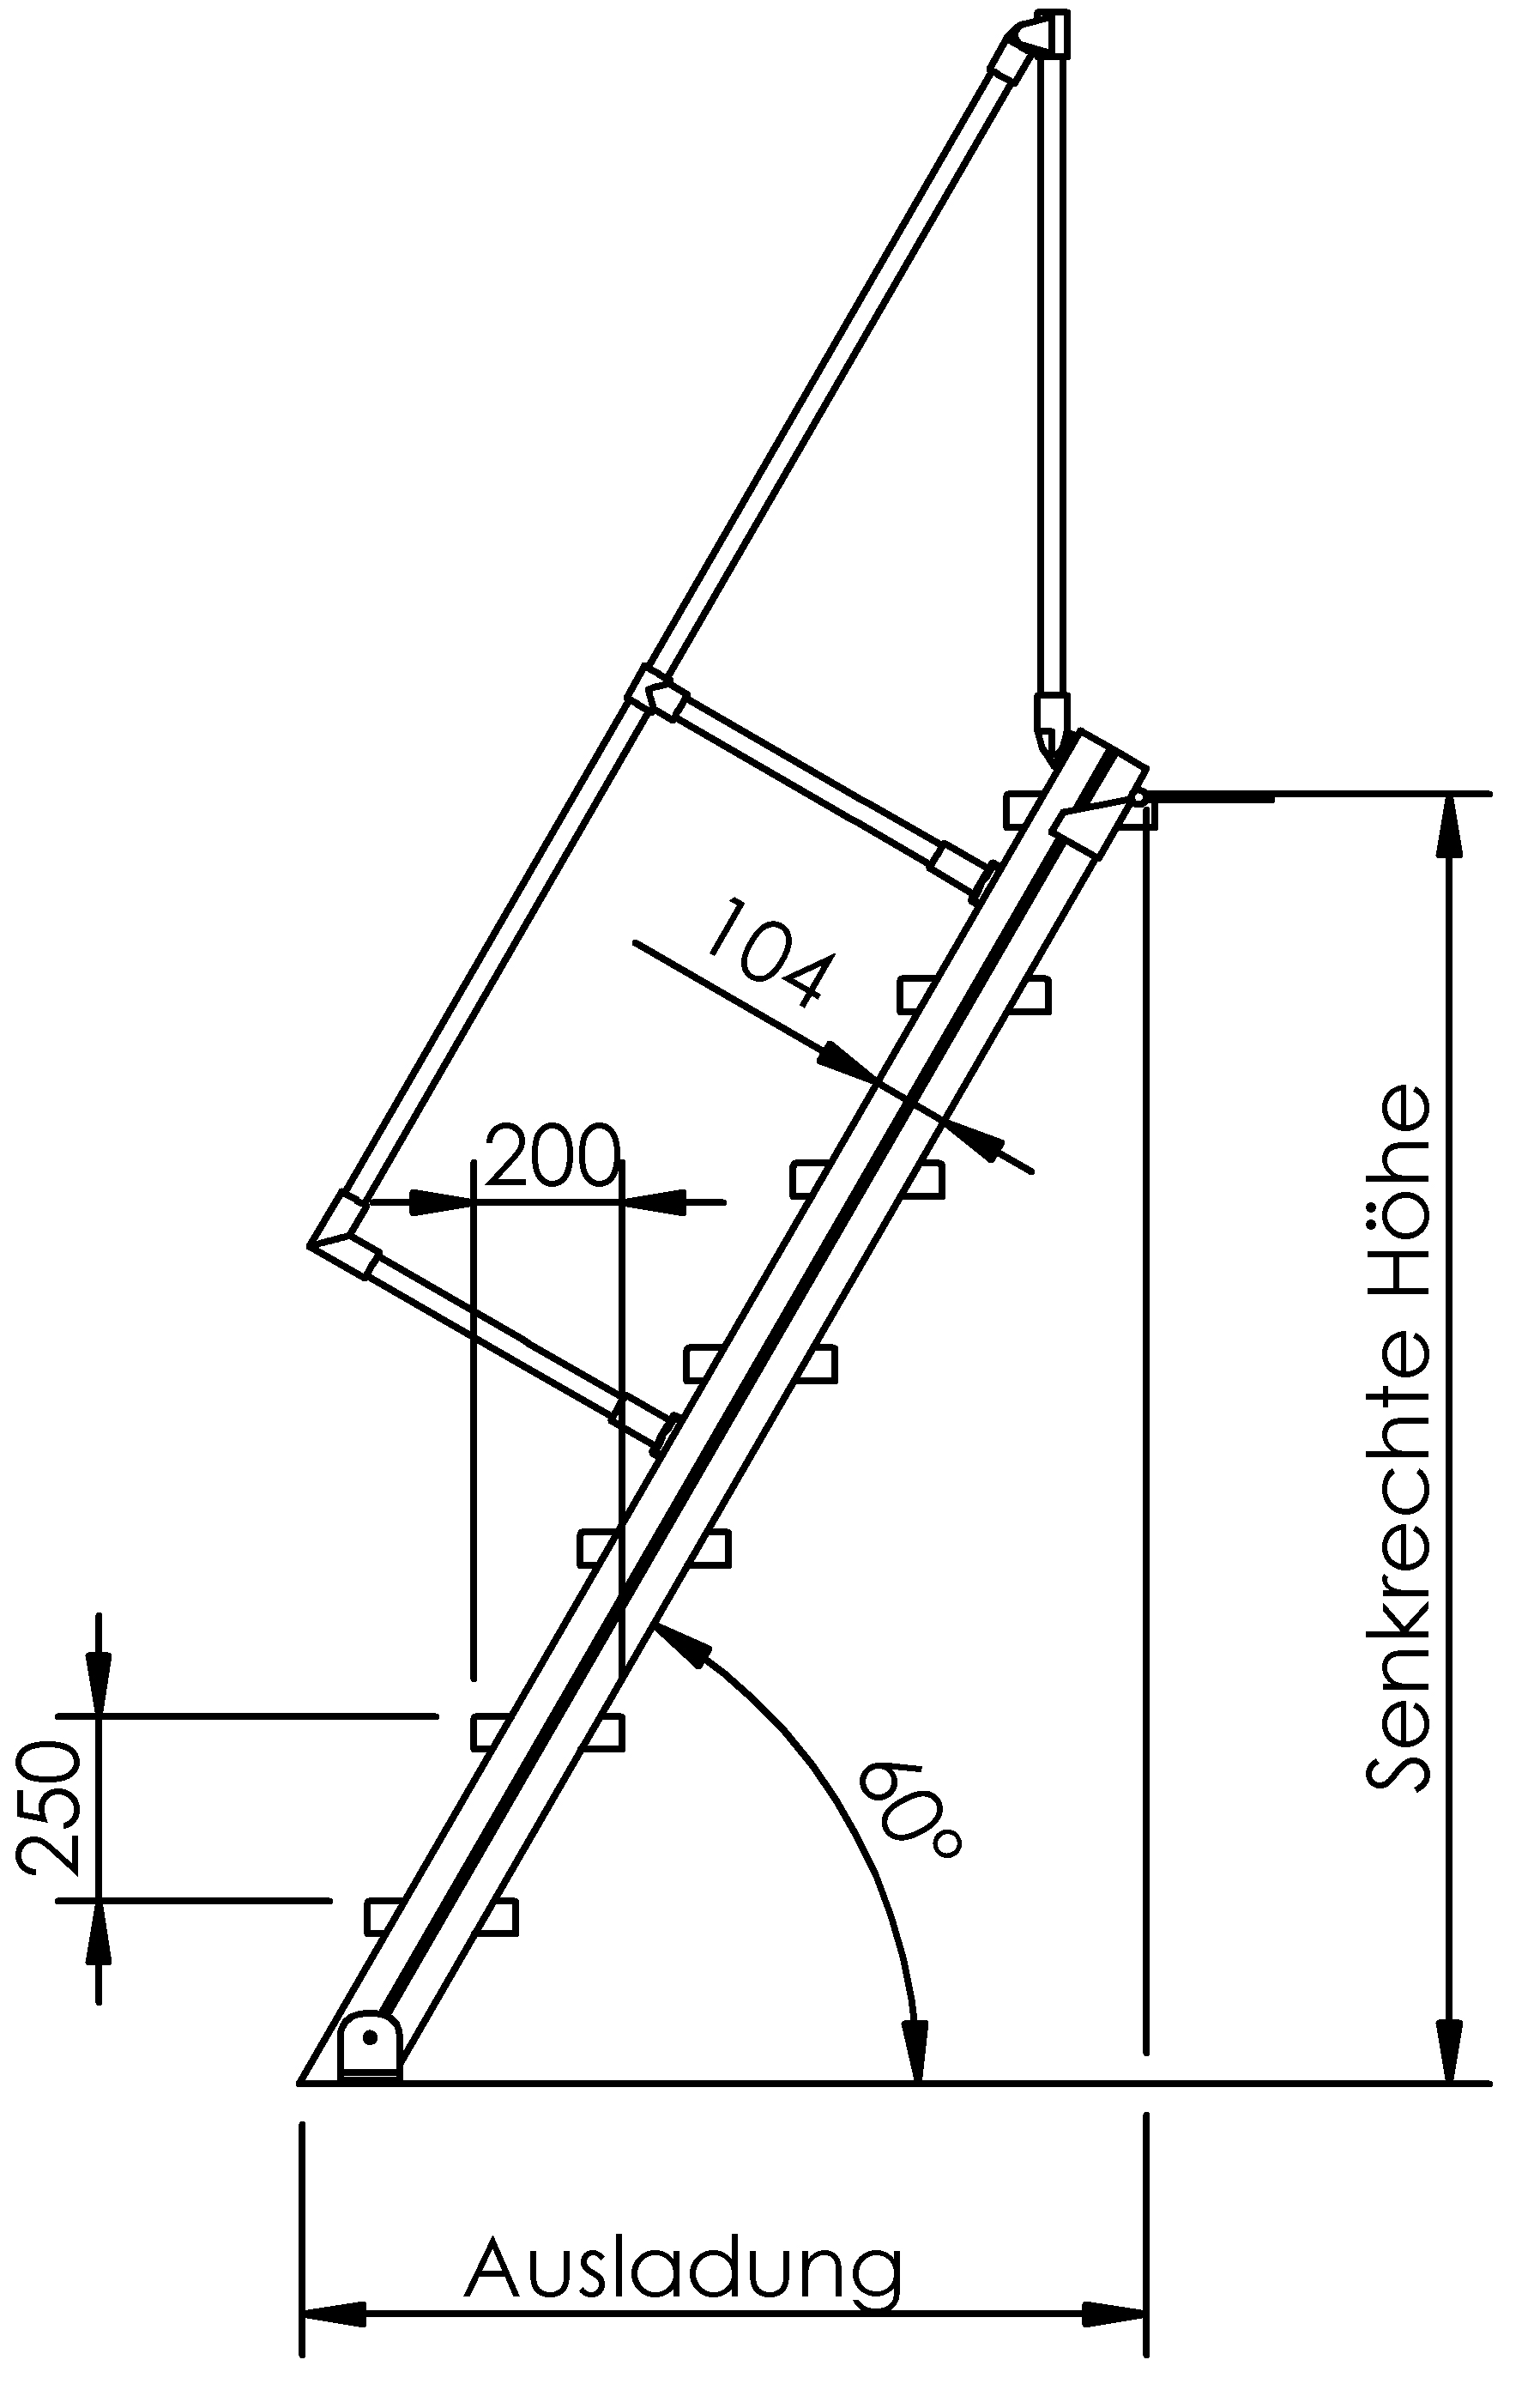 Selbstbautreppen, LW 800, Stufen aus Stahl, Neigung 60°